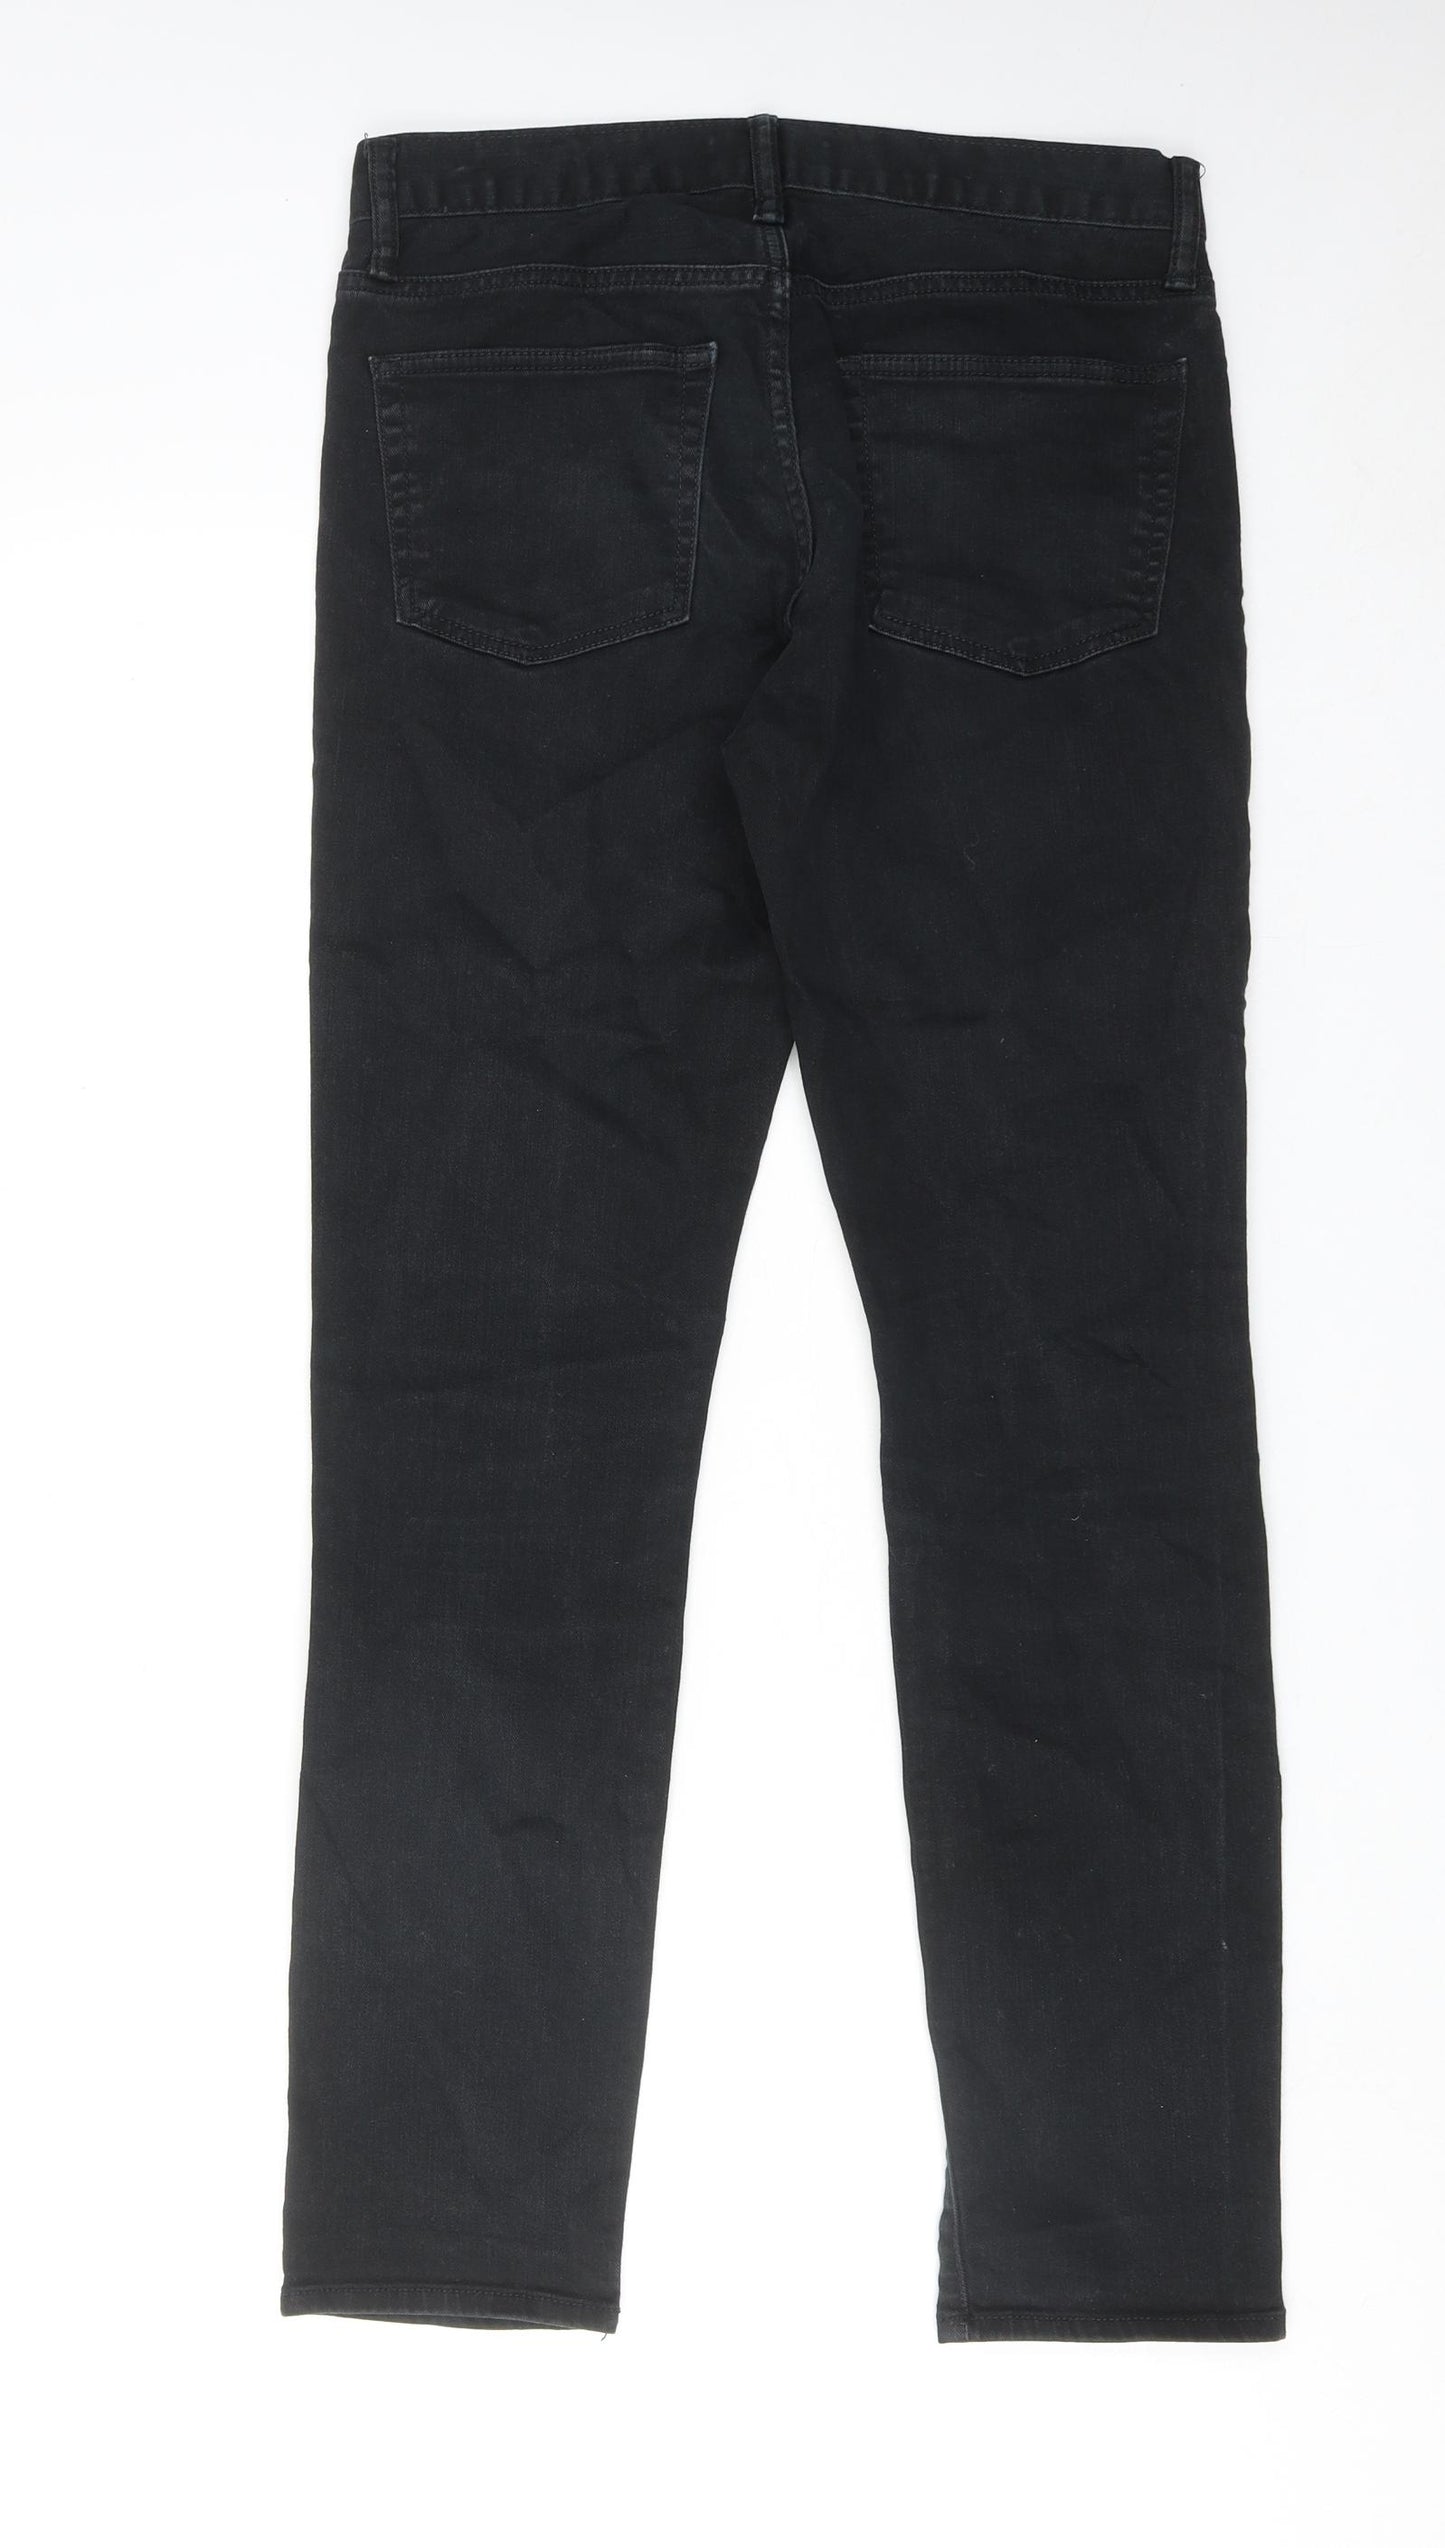 Gap Mens Black Cotton Skinny Jeans Size 30 in L30 in Regular Zip